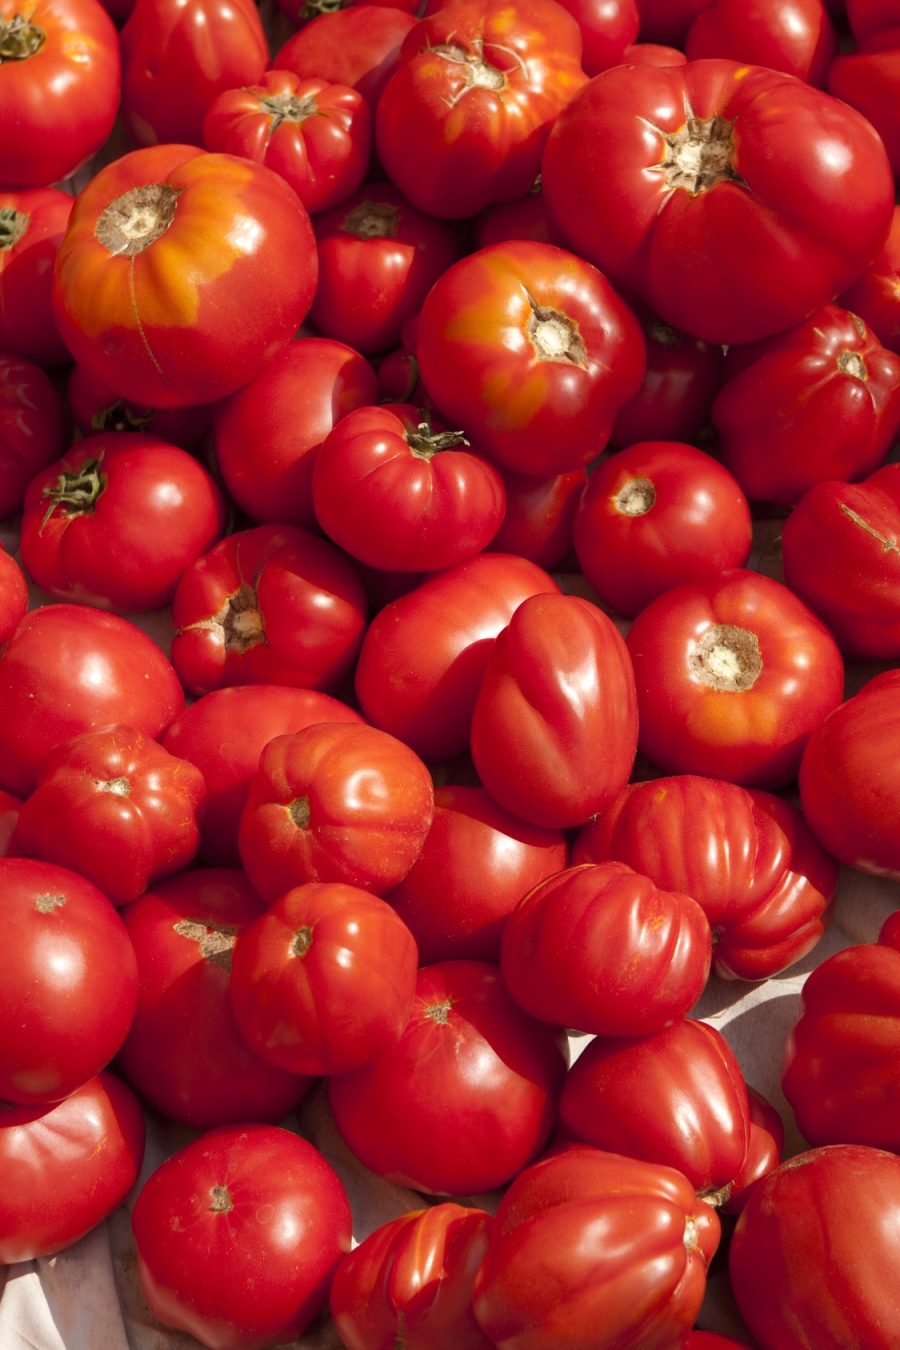 Weltweit gibt es mehr als 3000 Sorten an Tomaten. Es gibt runde, flache, eiförmige, große, kleine, winzige, rote, gelbe, schwarze, grüne – und immer mehr verschiedene Sorten werden auch bei uns im Handel angeboten.